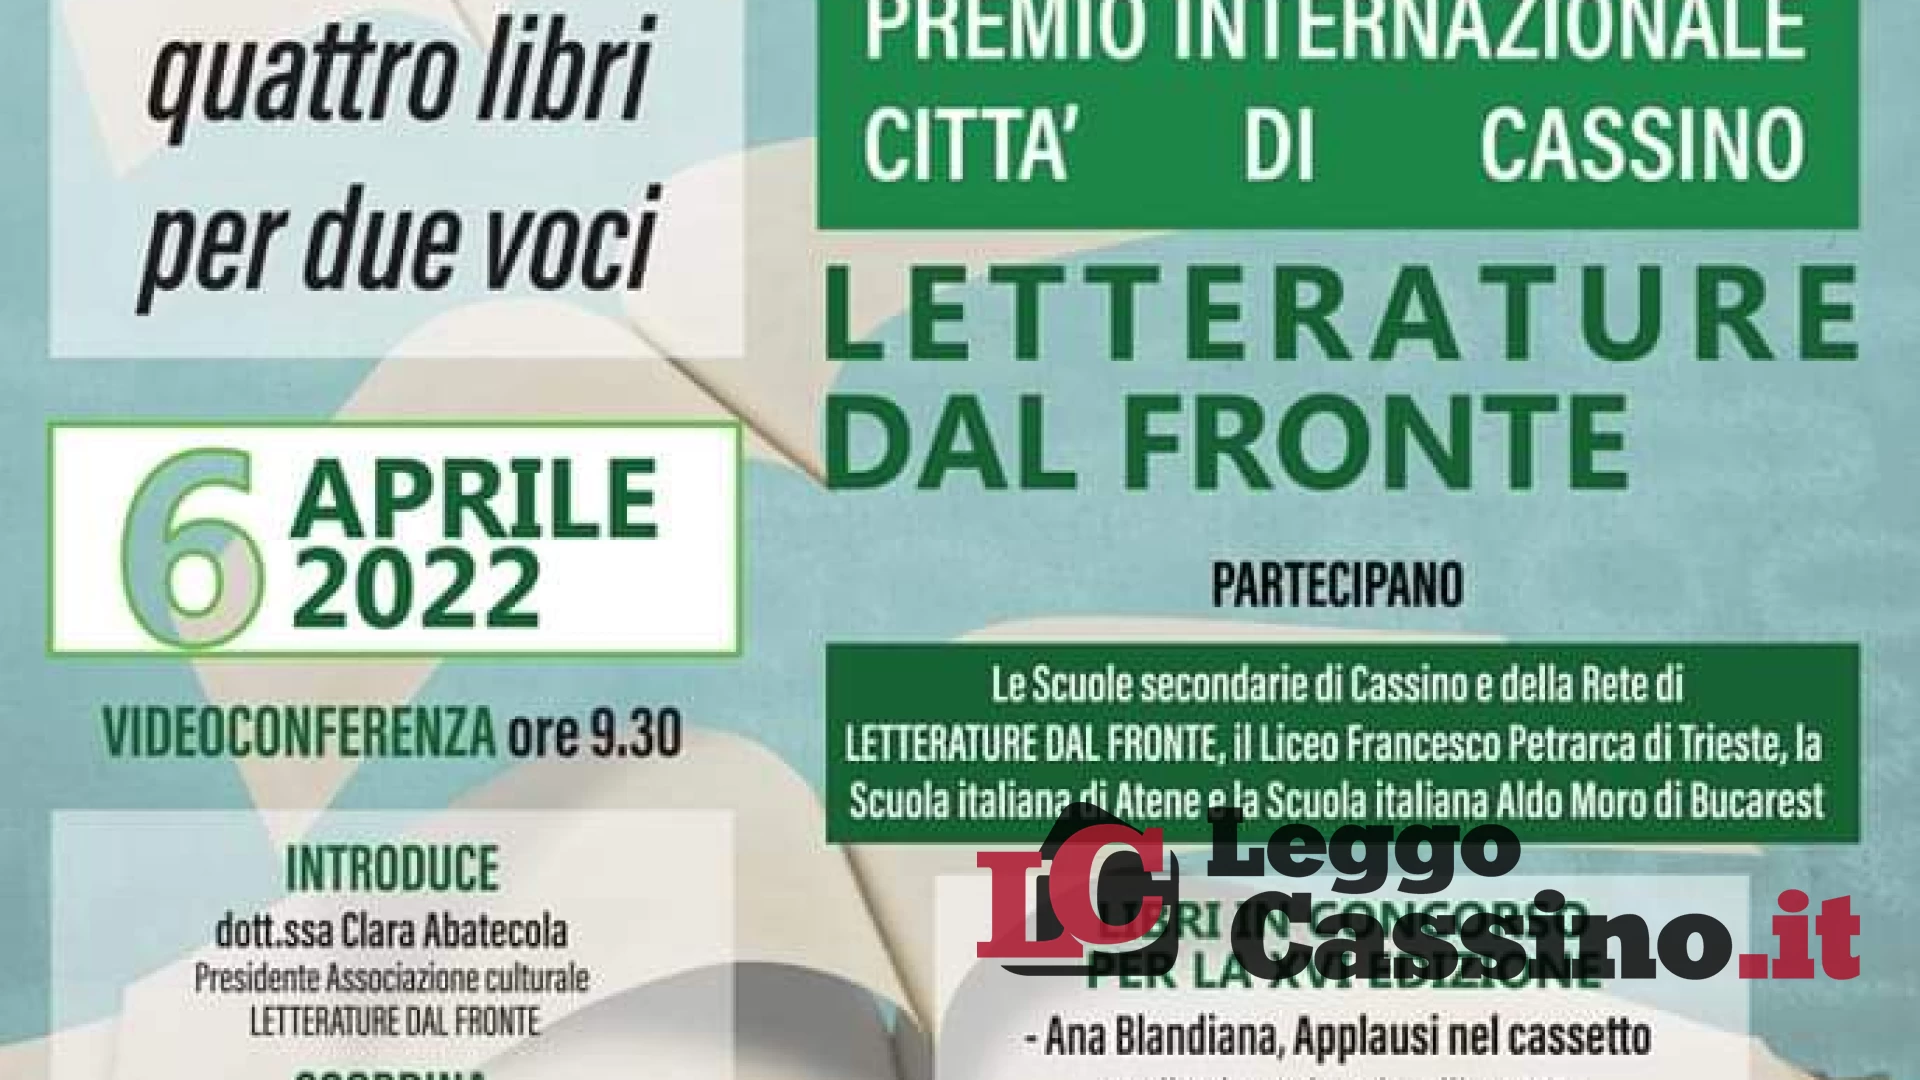 Ecco la XVI edizione del Premio Internazionale Città di Cassino "Letterature dal Fronte"